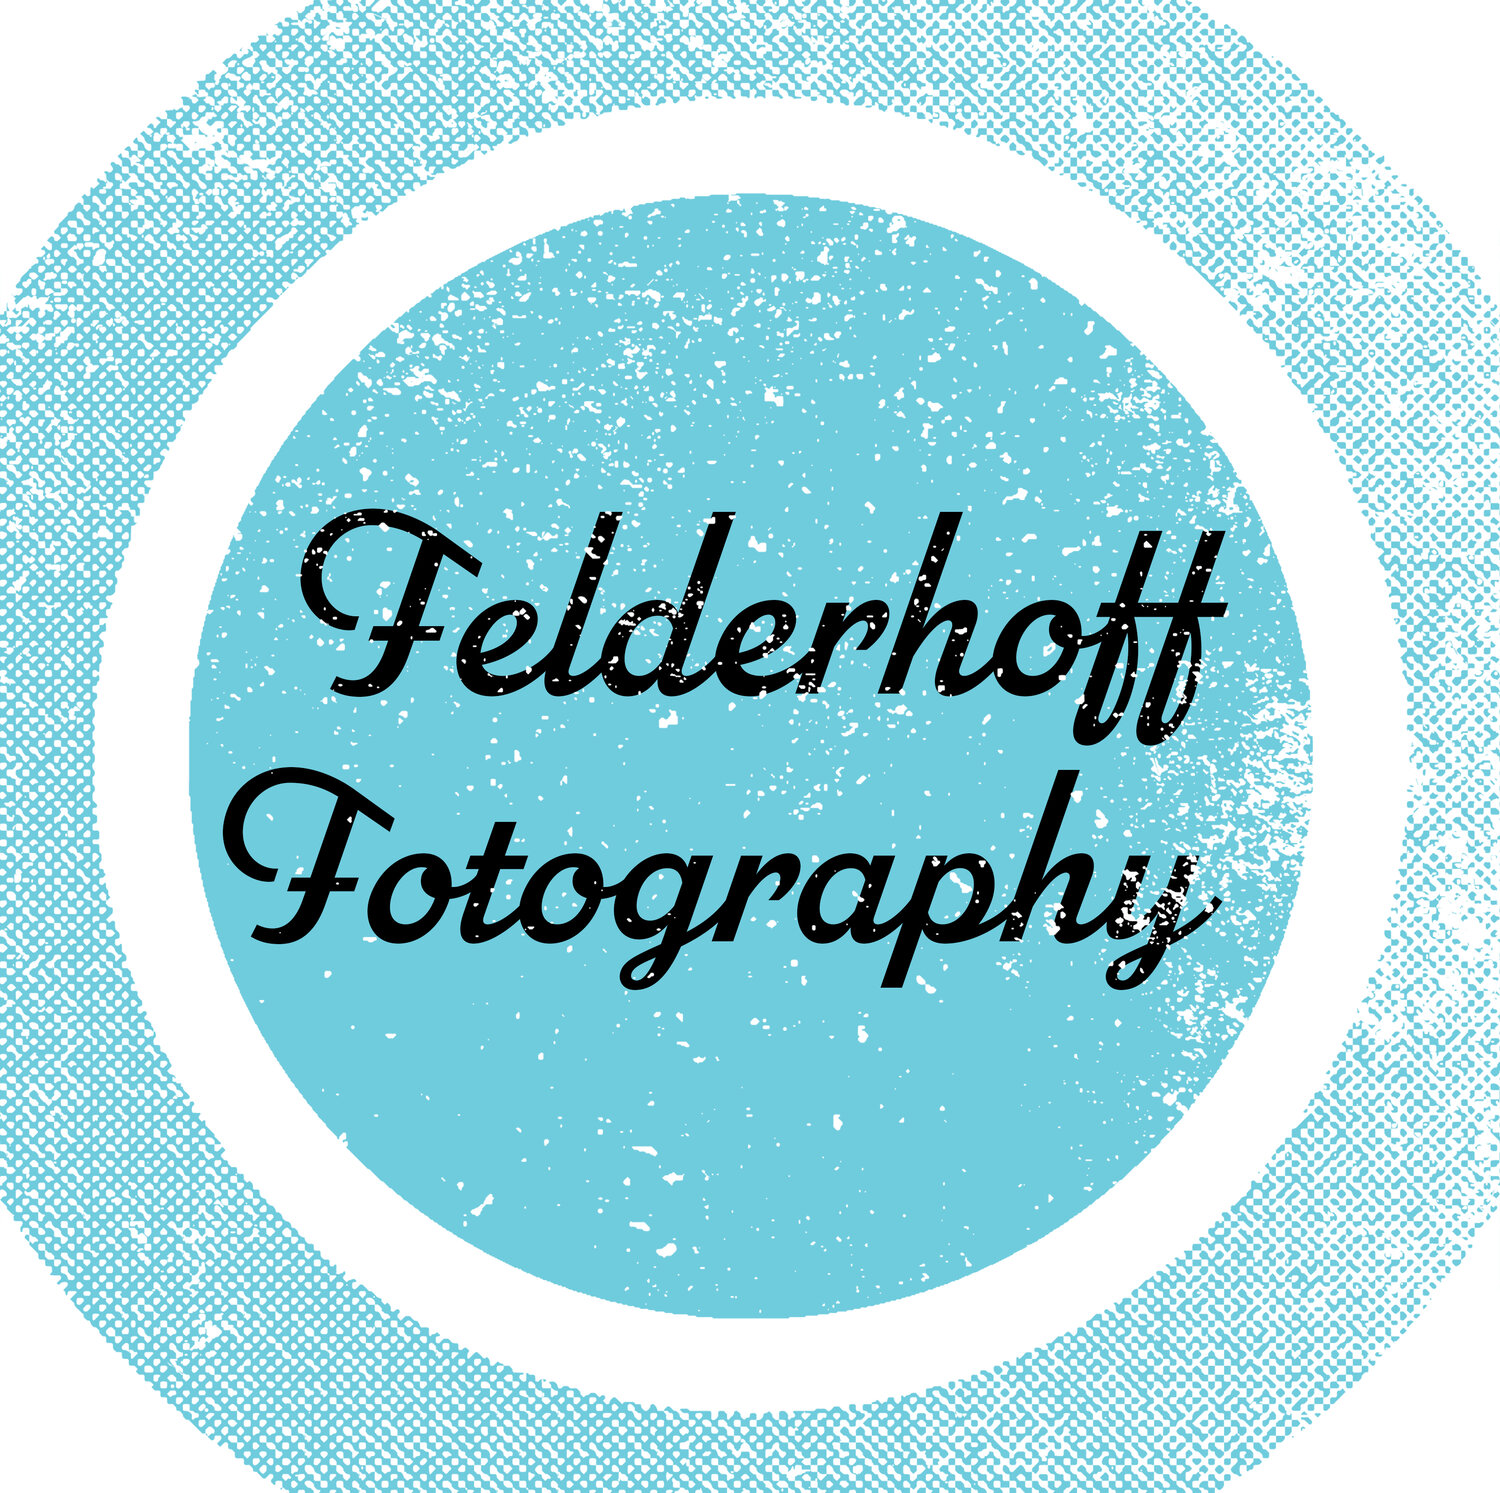 Felderhoff Fotography